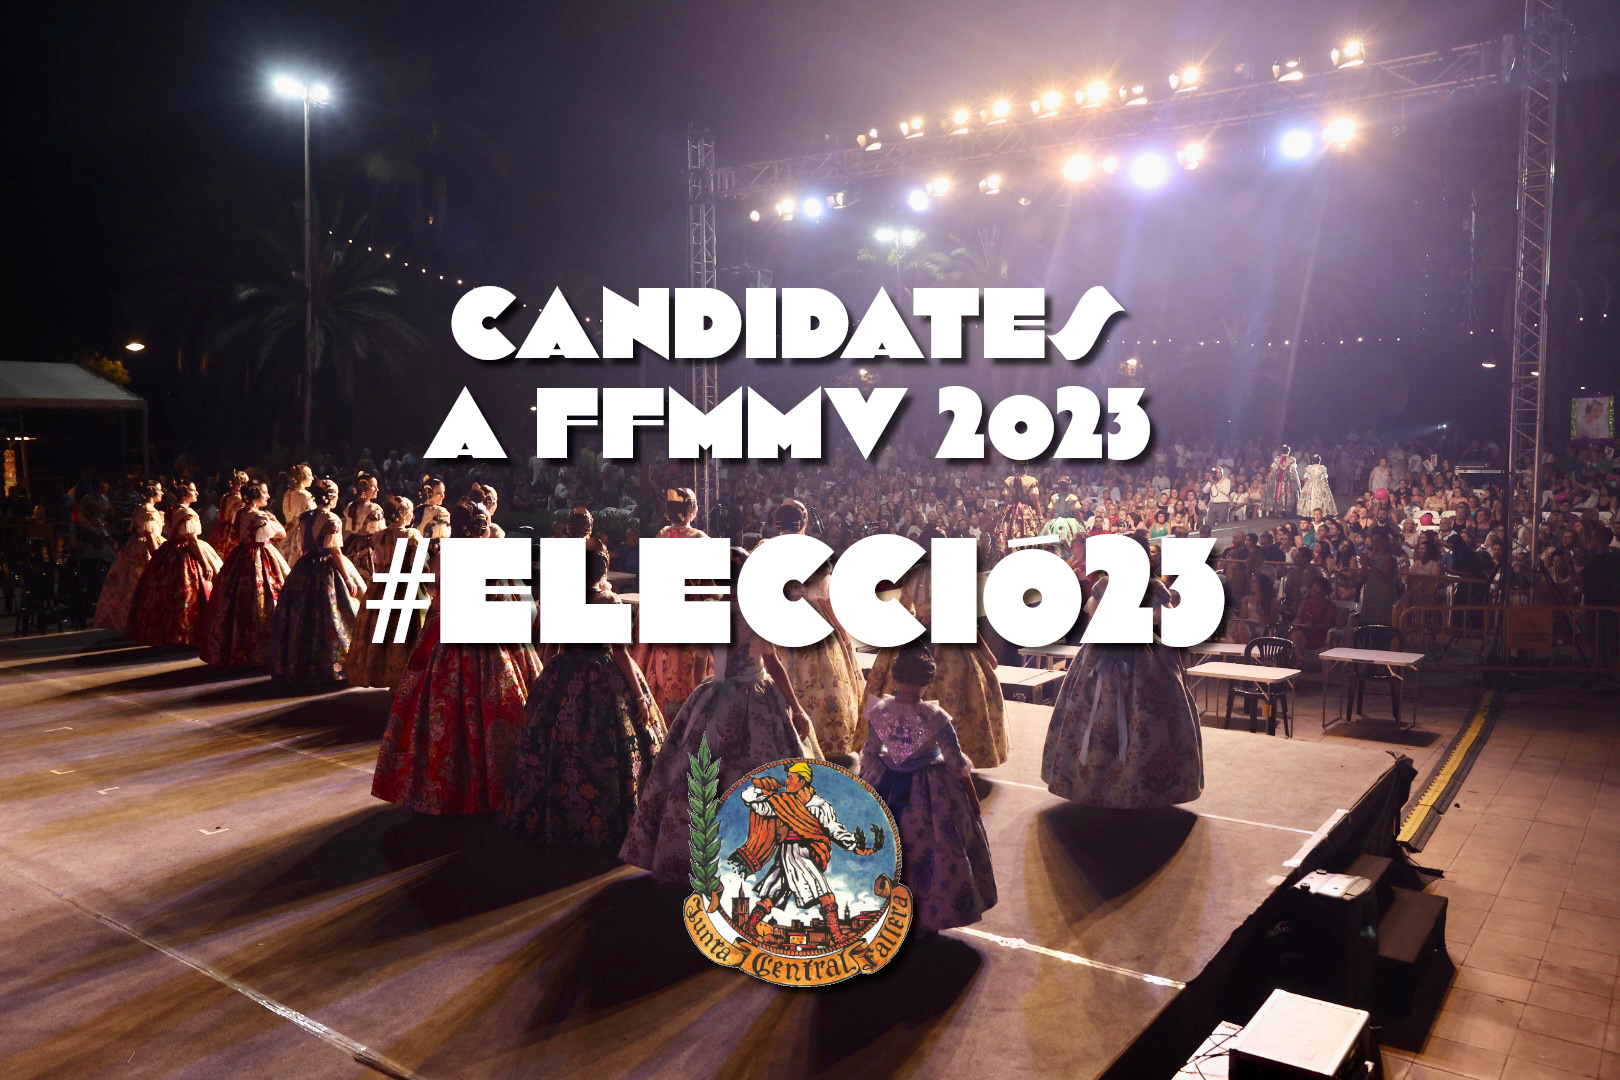 Fotografies oficials de les candidates a FFMMV 2023